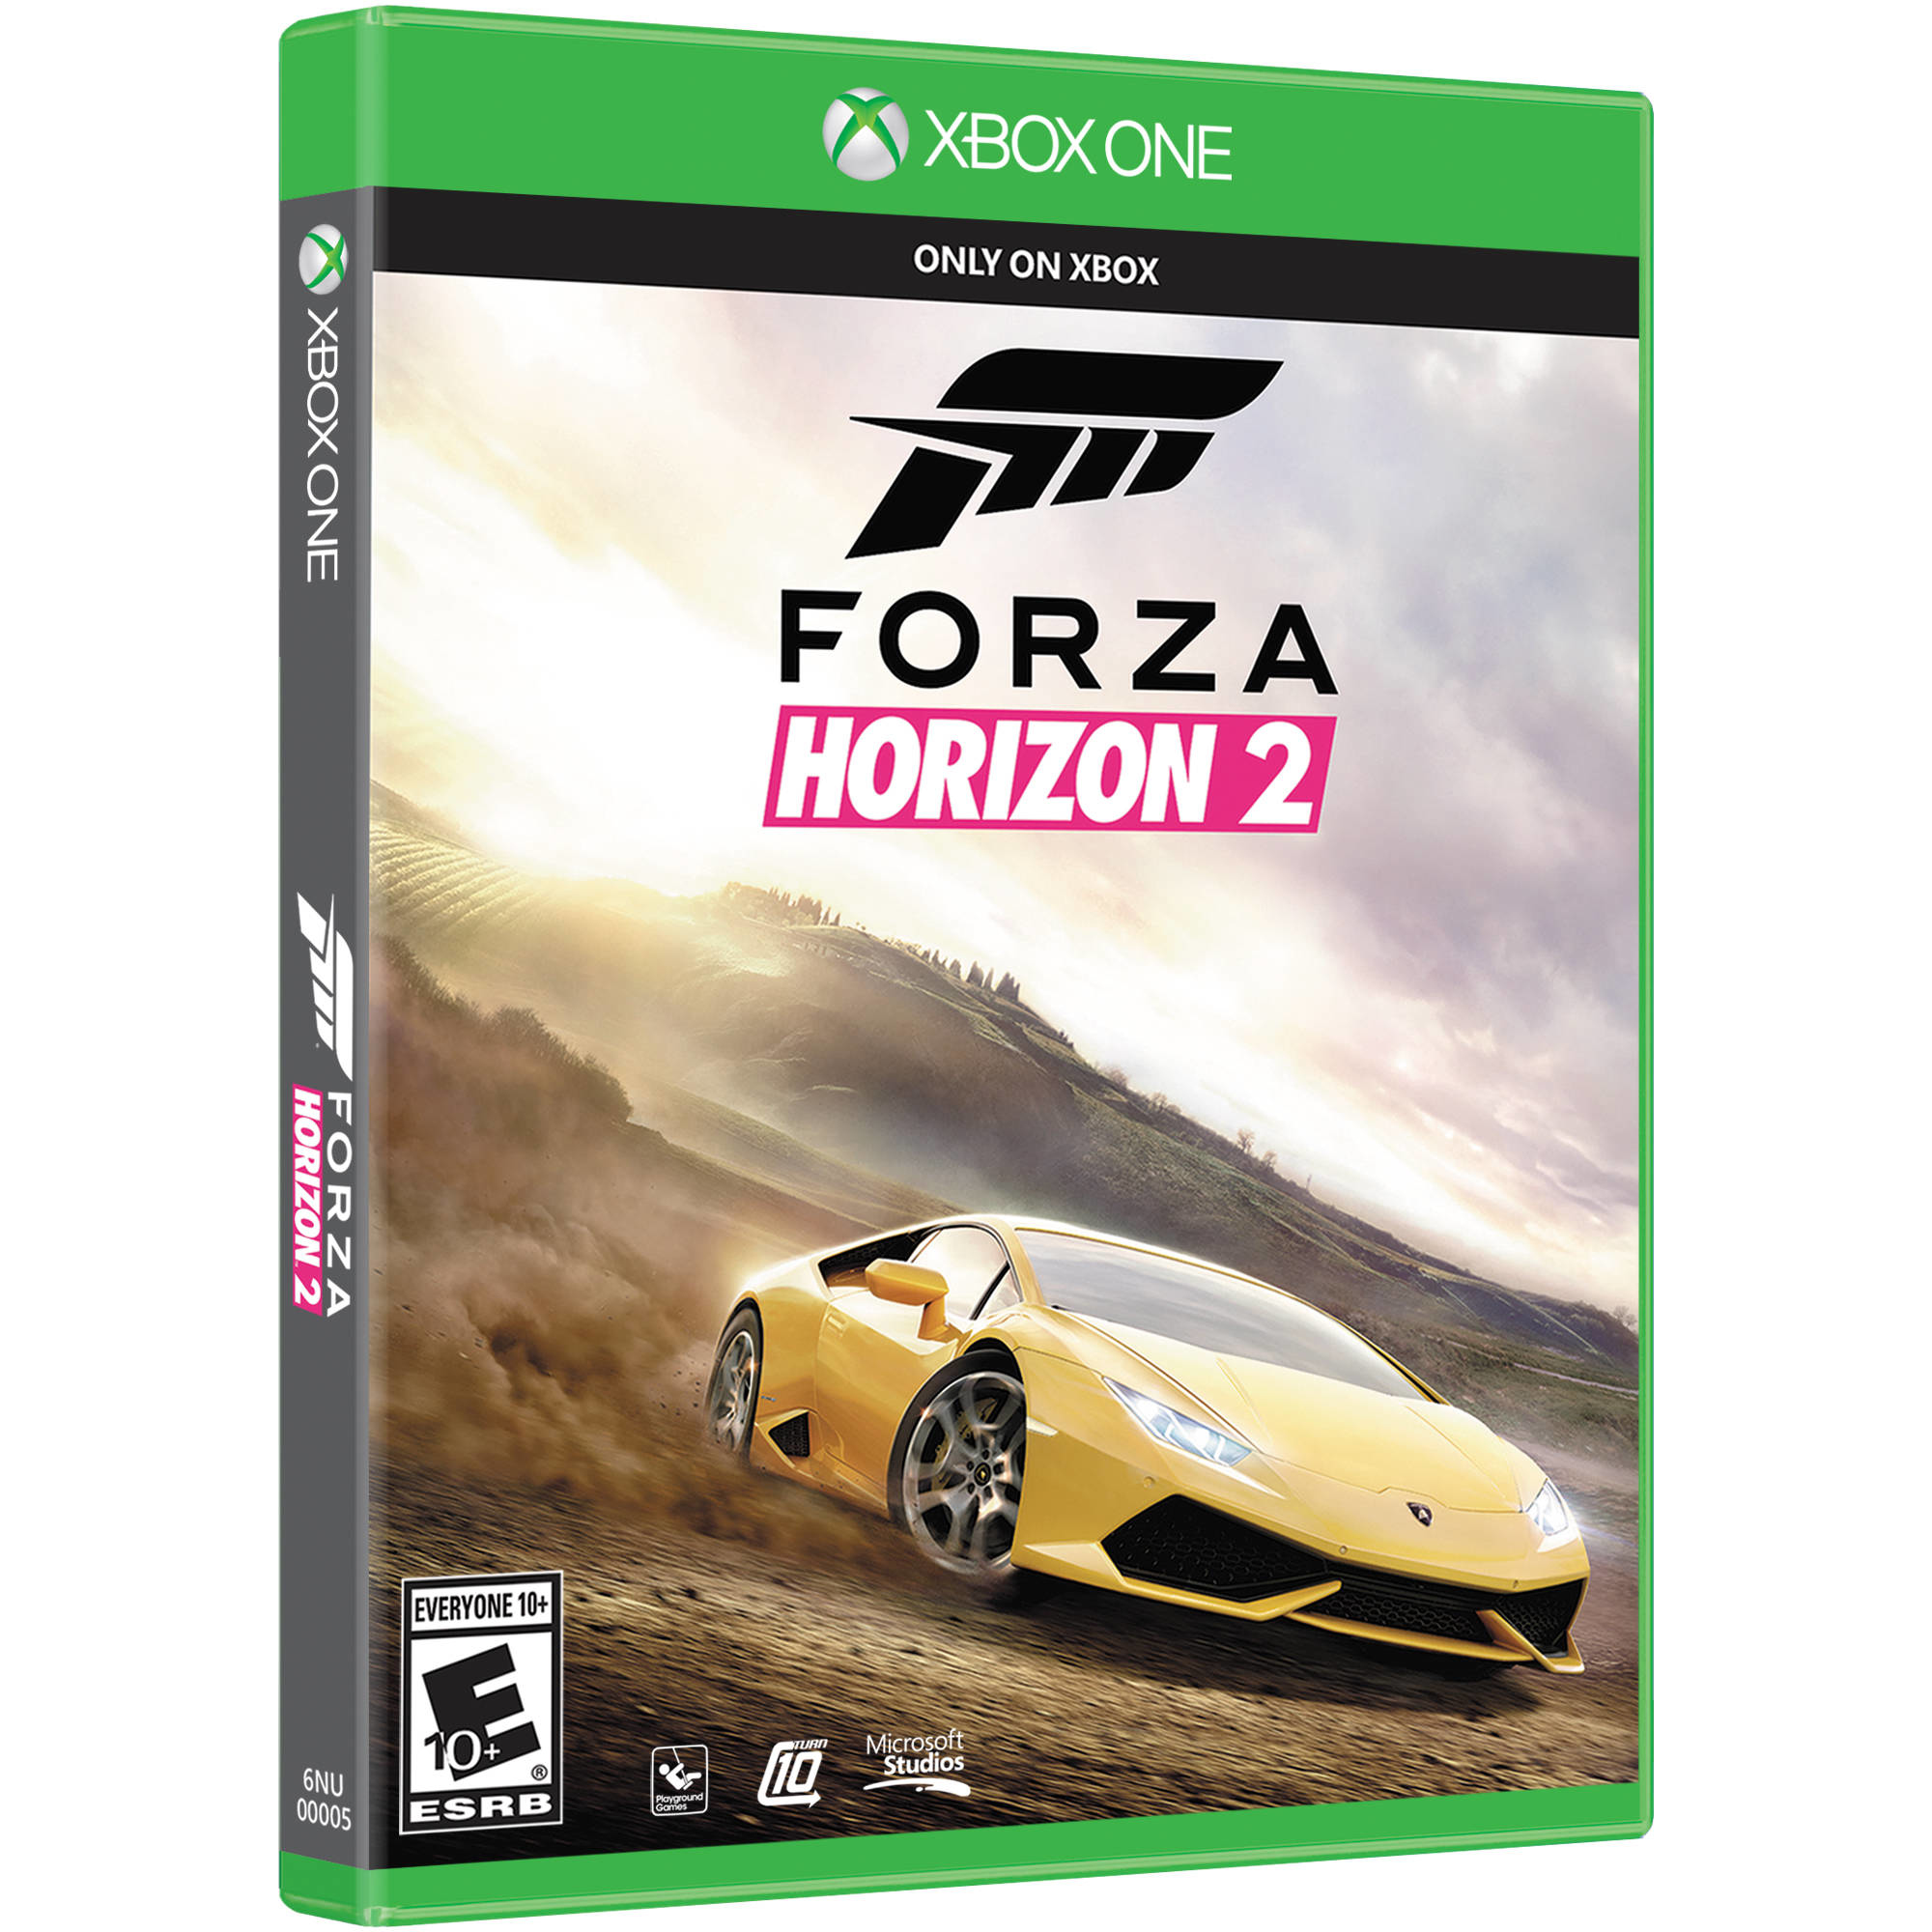 Forza Horizon 2 Microsoft Studio 6Nu-00007 Xbox One Español